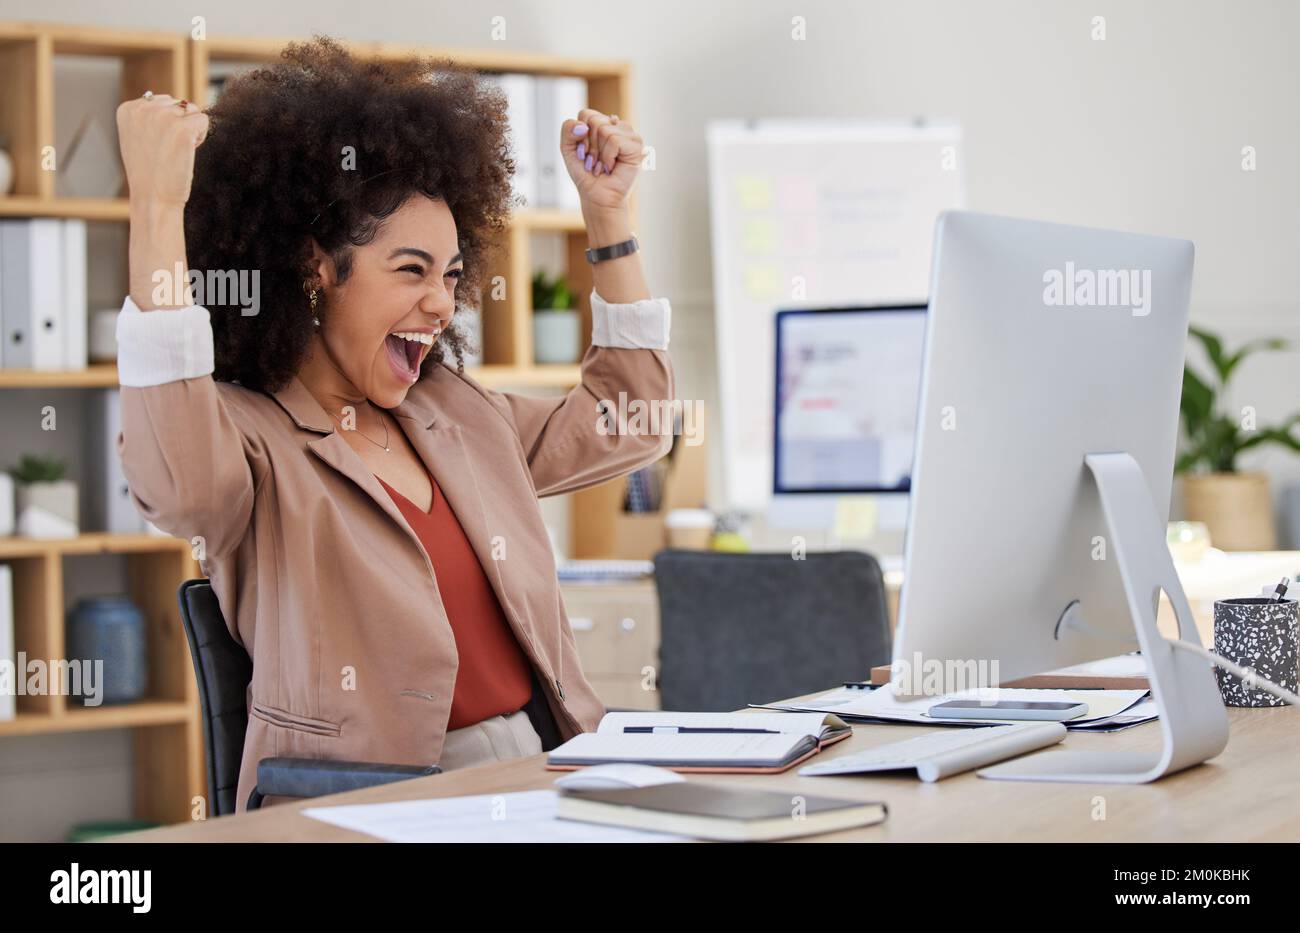 Une femme d'affaires afro-américaine de race mixte avec un afro exprimant la joie tout en célébrant une victoire à son travail de bureau. Femme hispanique qui a l'air réussie Banque D'Images